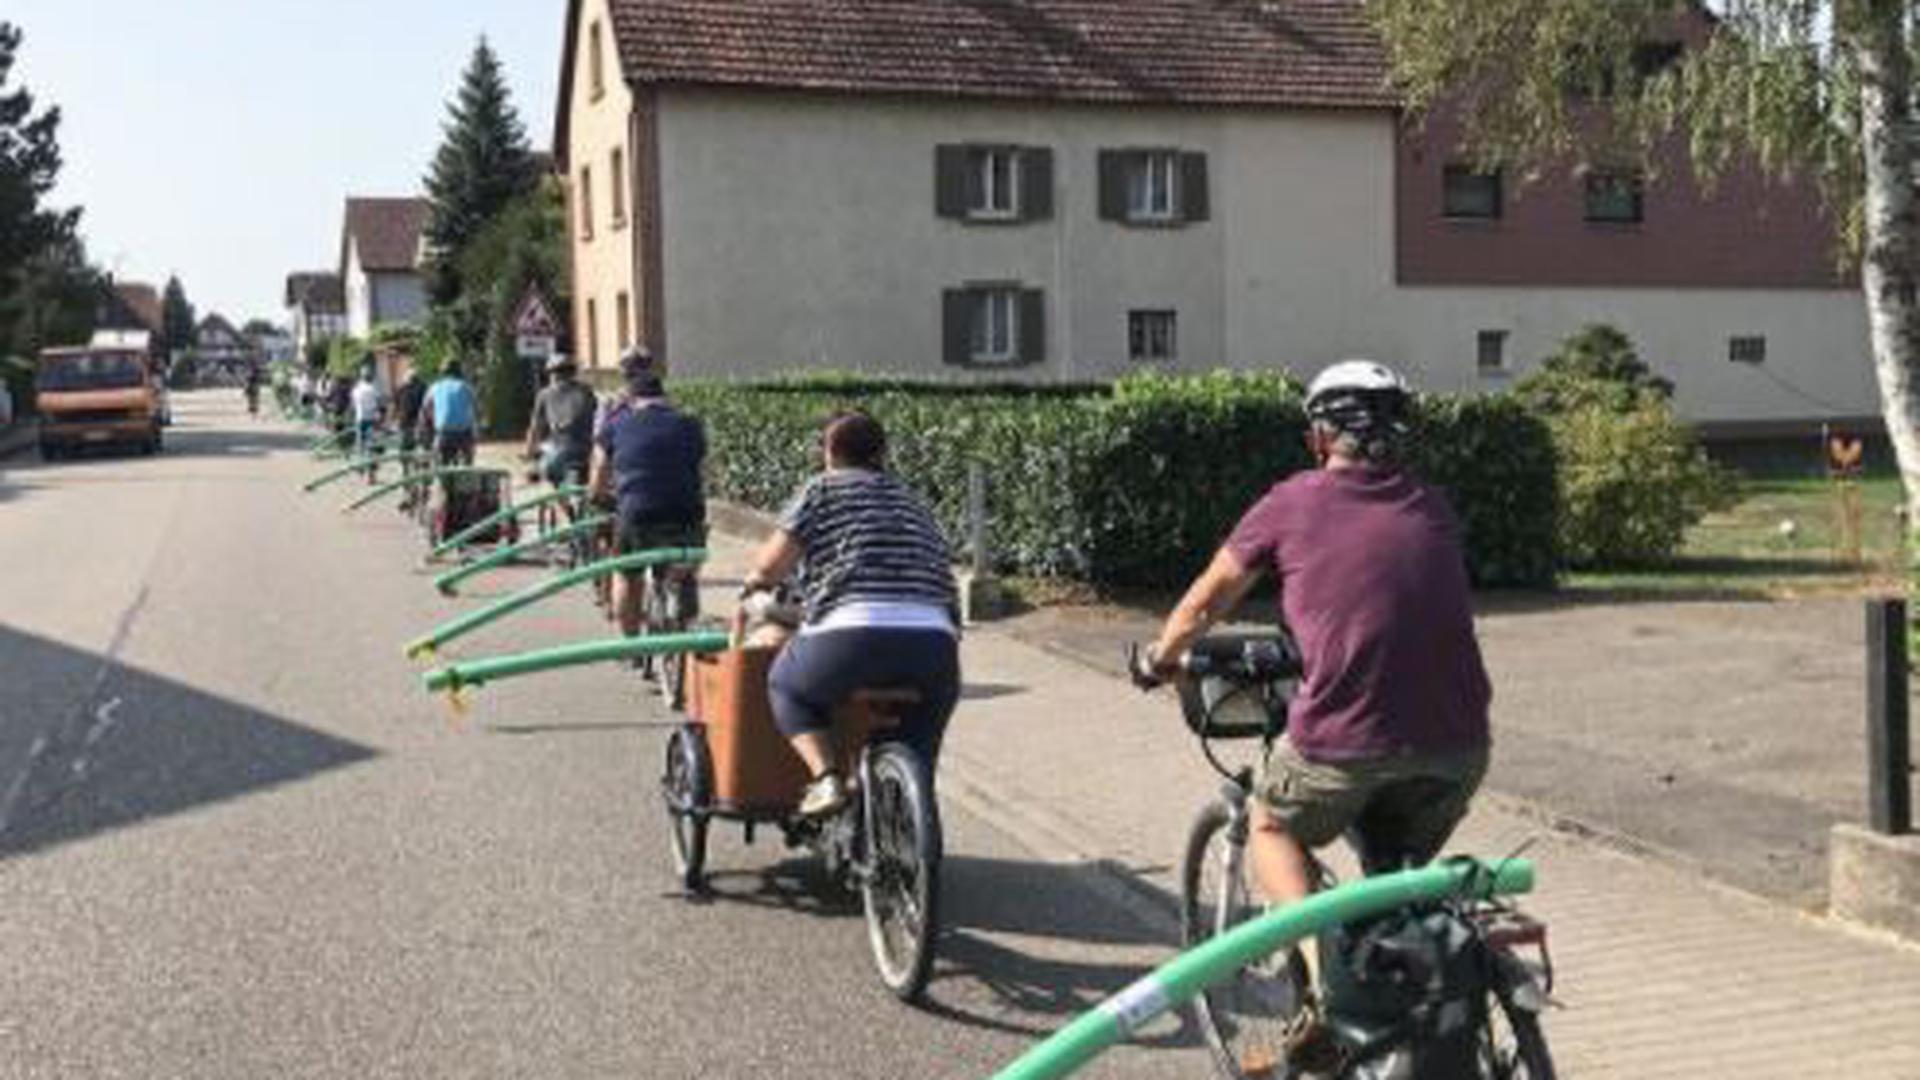 Zeichen gesetzt: Mit der Poolnudel-Tour setzten rund 40 Teilnehmer in Lichtenau ein sichtbares Zeichen für mehr Sicherheit für Radfahrer.